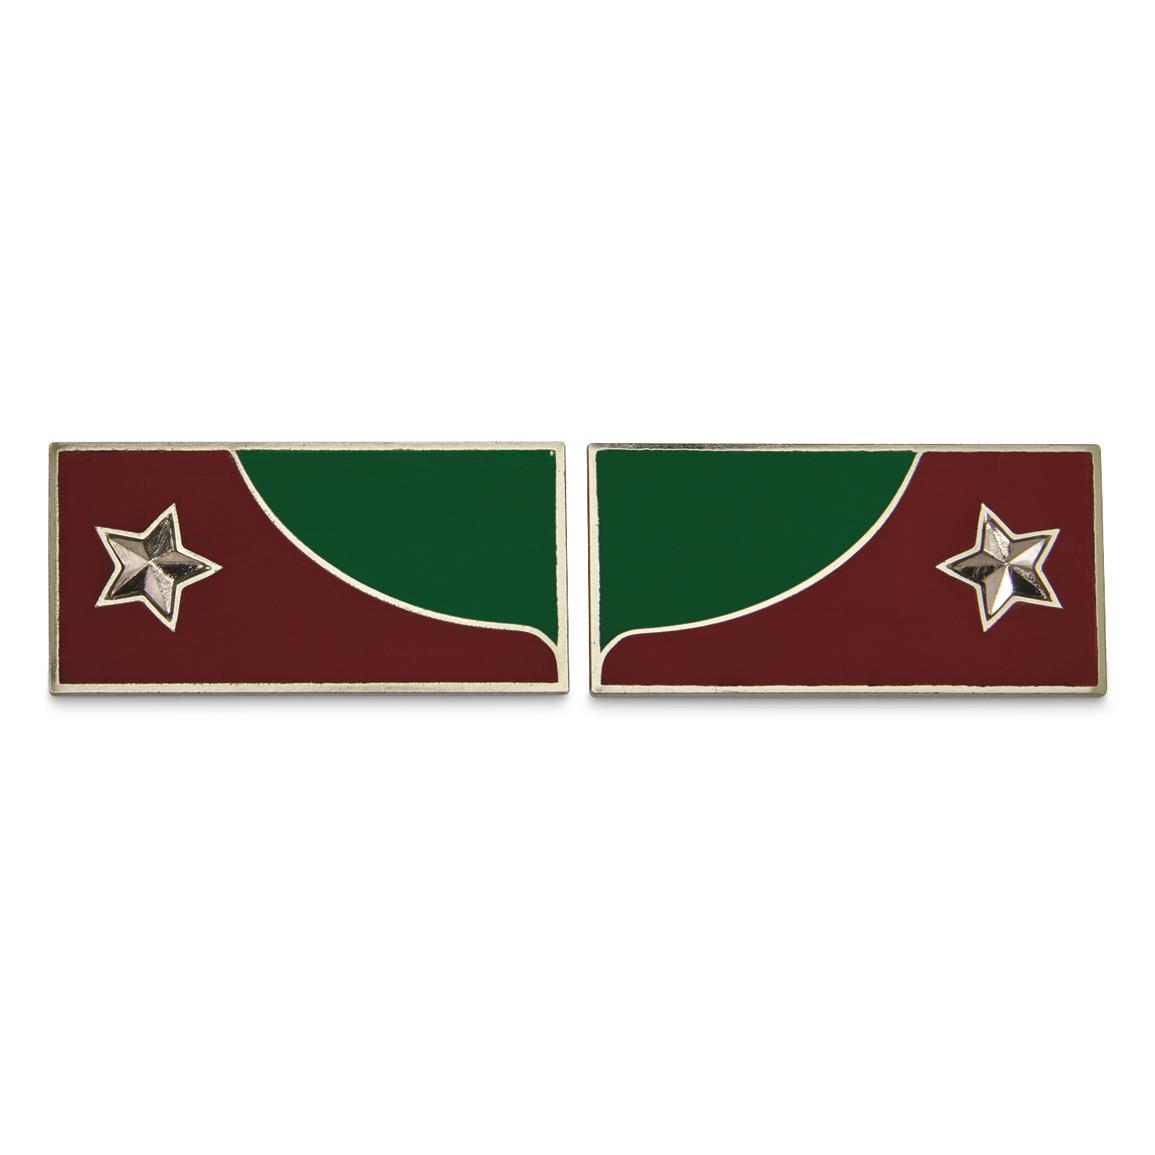 Italian Military Surplus Alpine Troop Medic Badges, Used